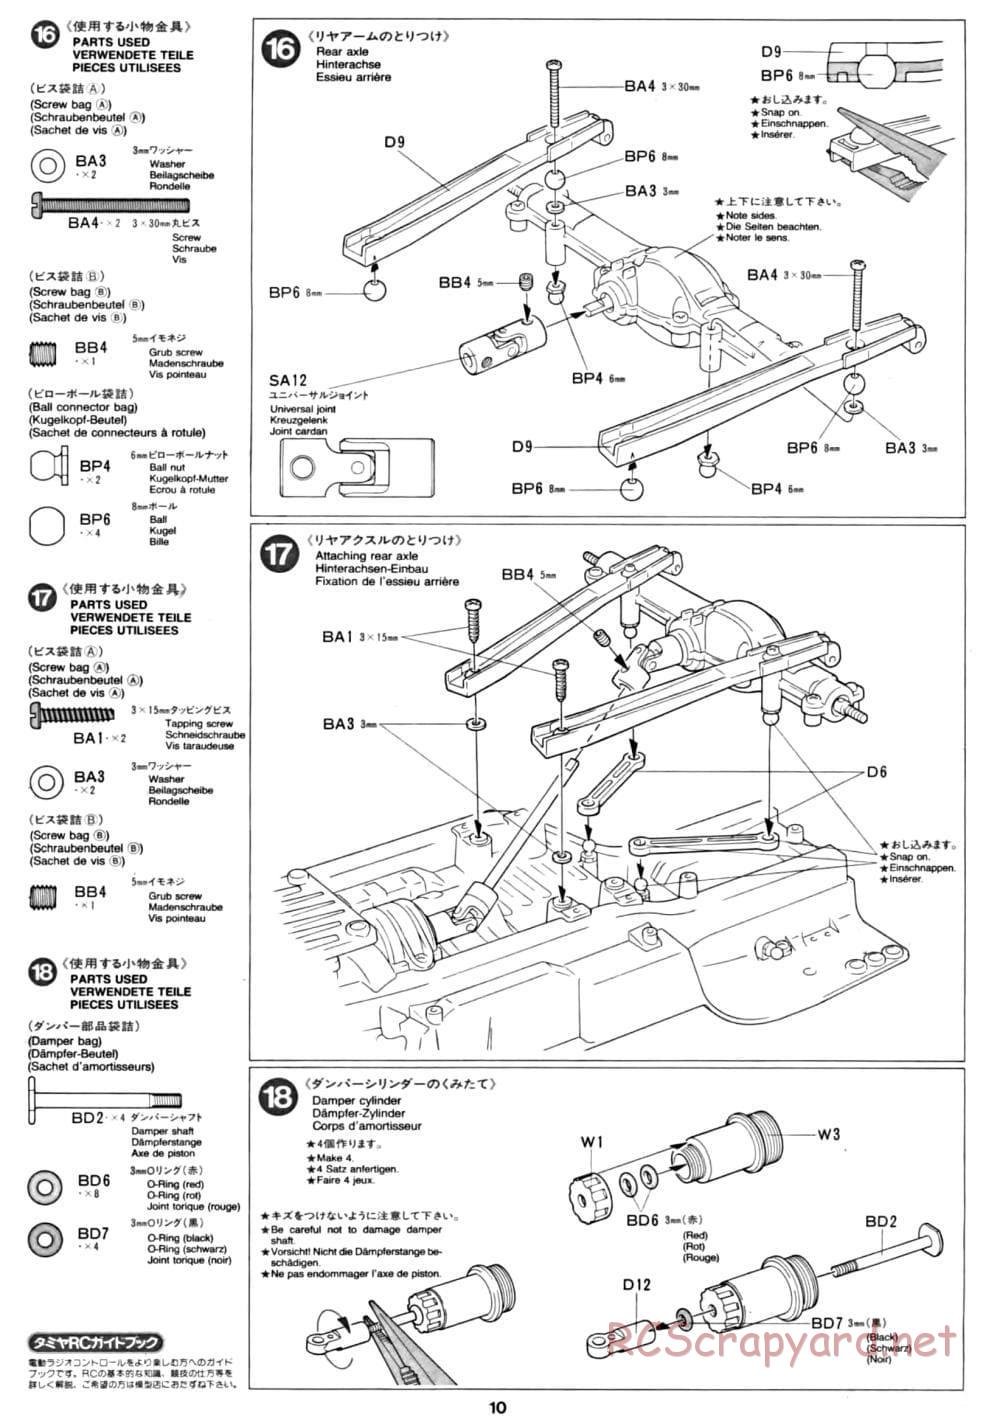 Tamiya - CC-01 Chassis - Manual - Page 10